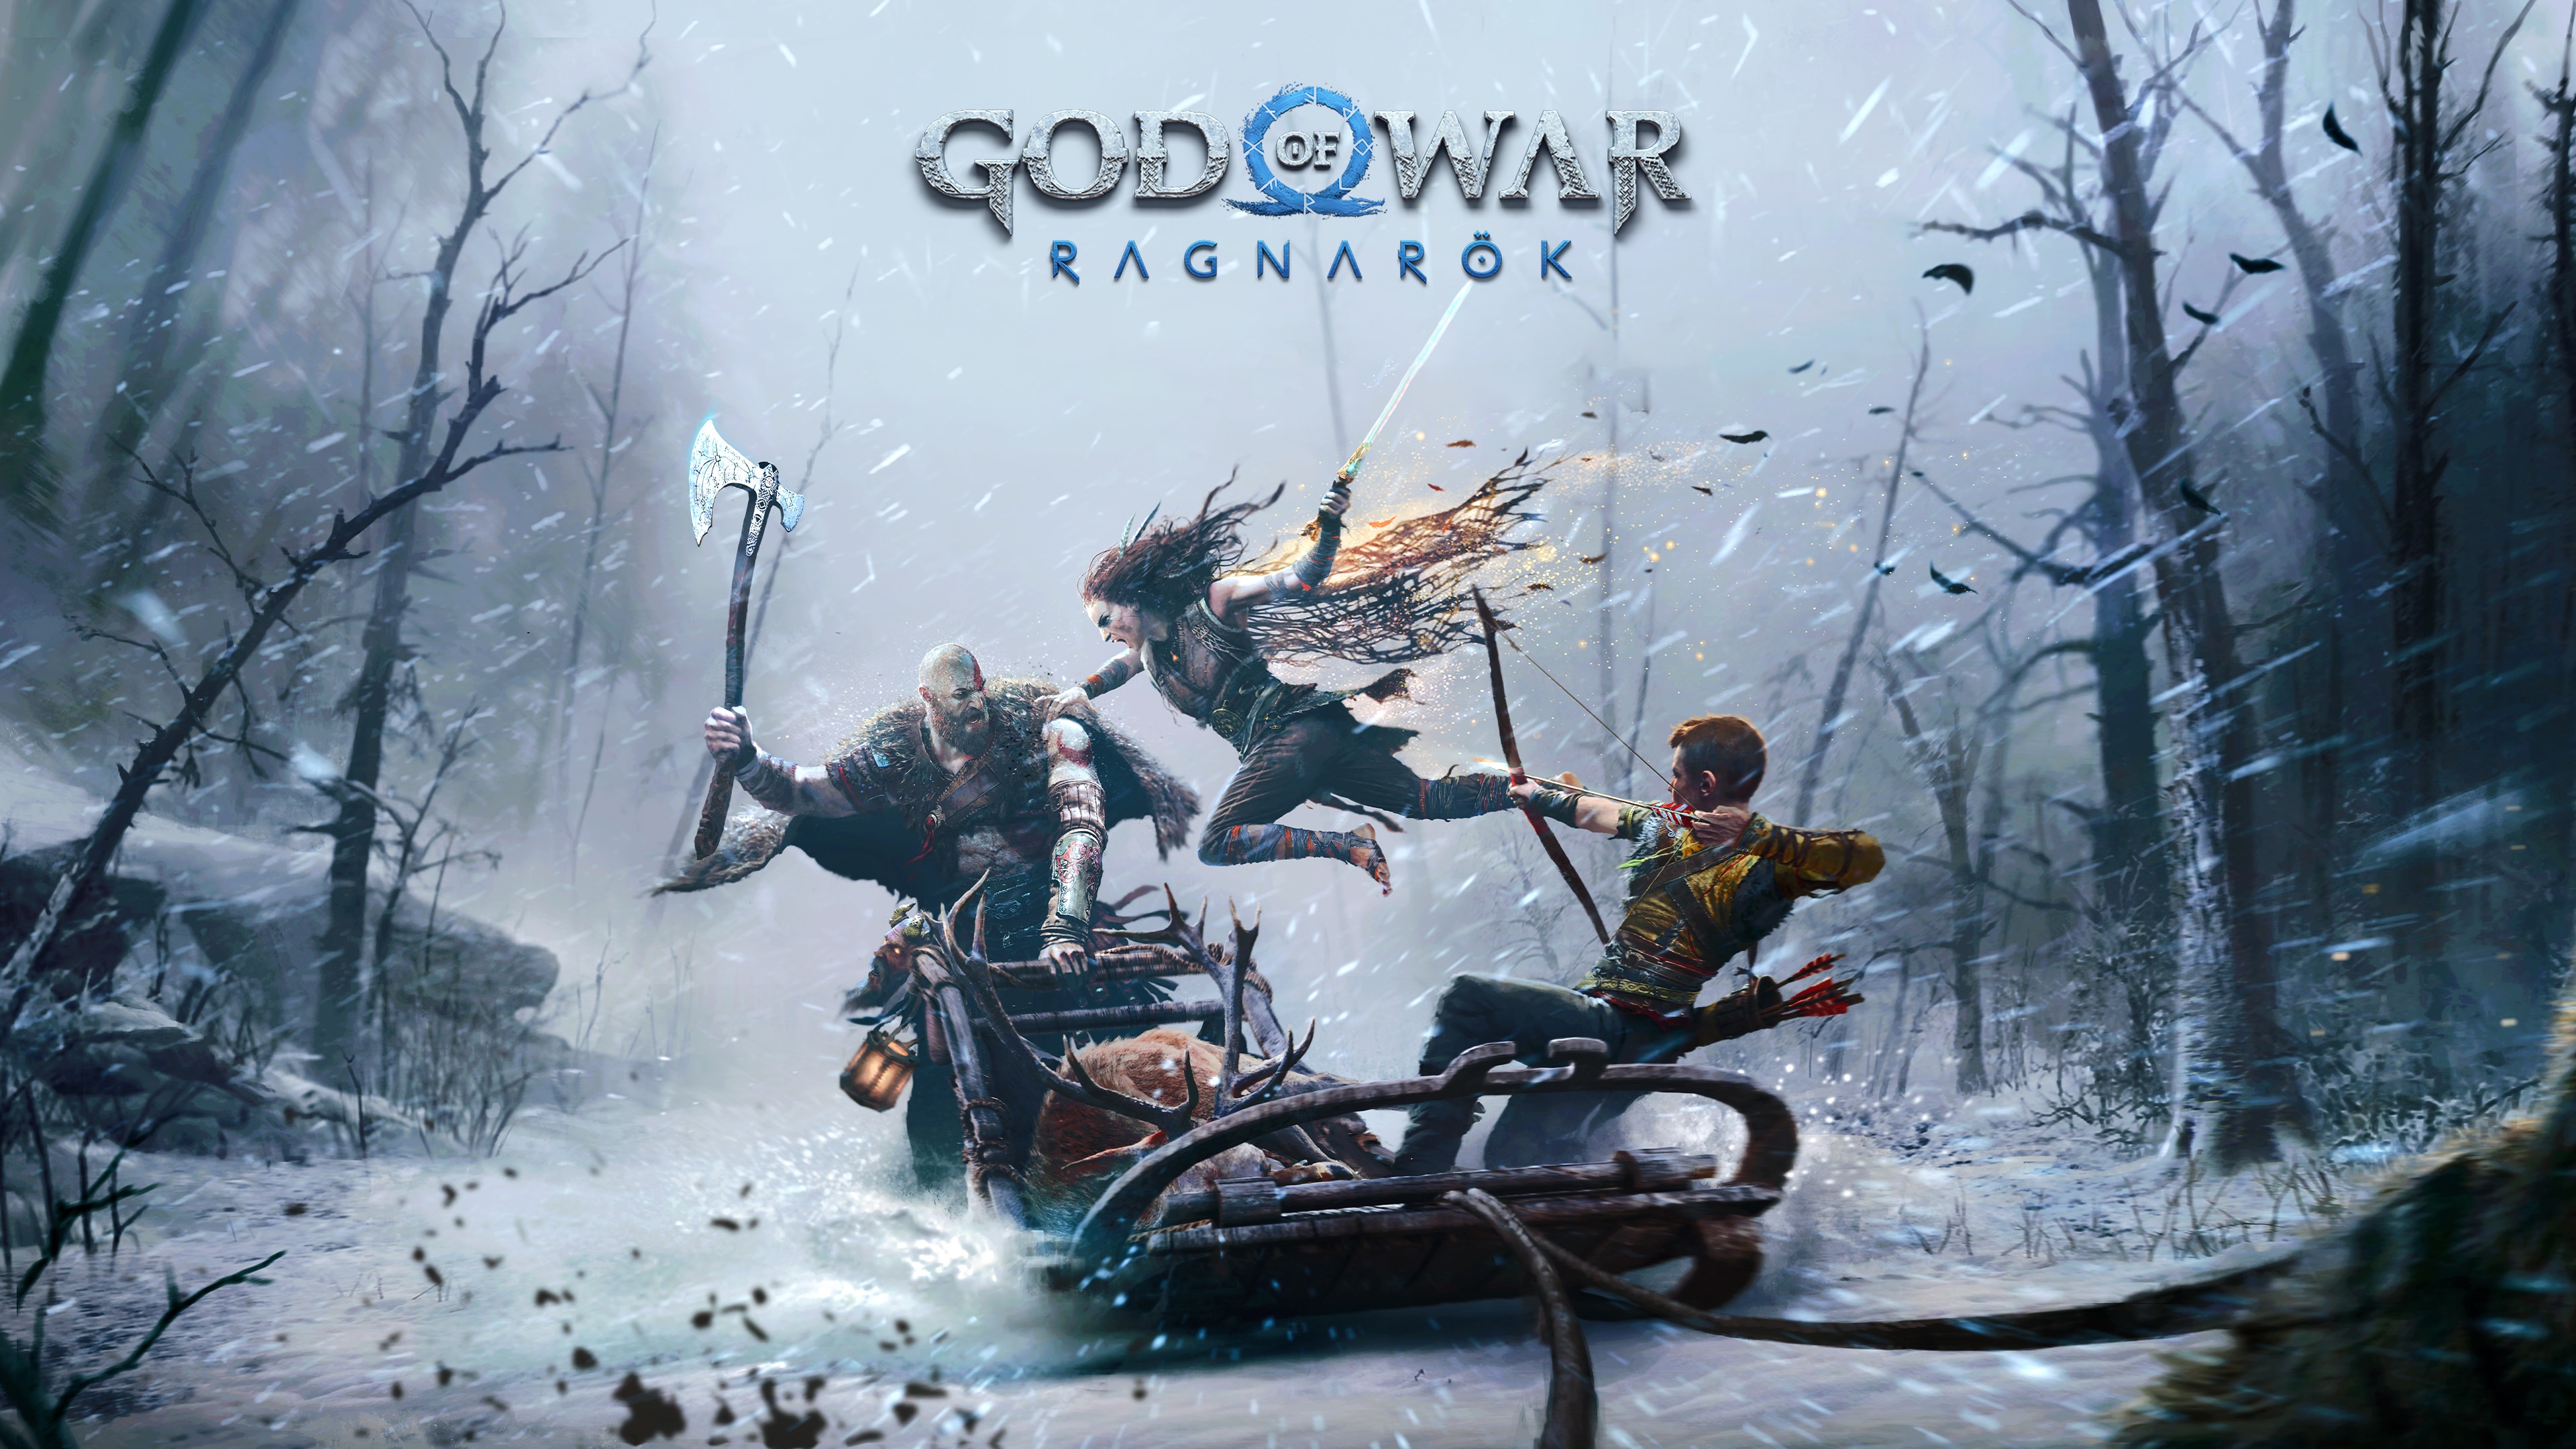 130+ God of War: Ragnarök HD Wallpapers and Backgrounds